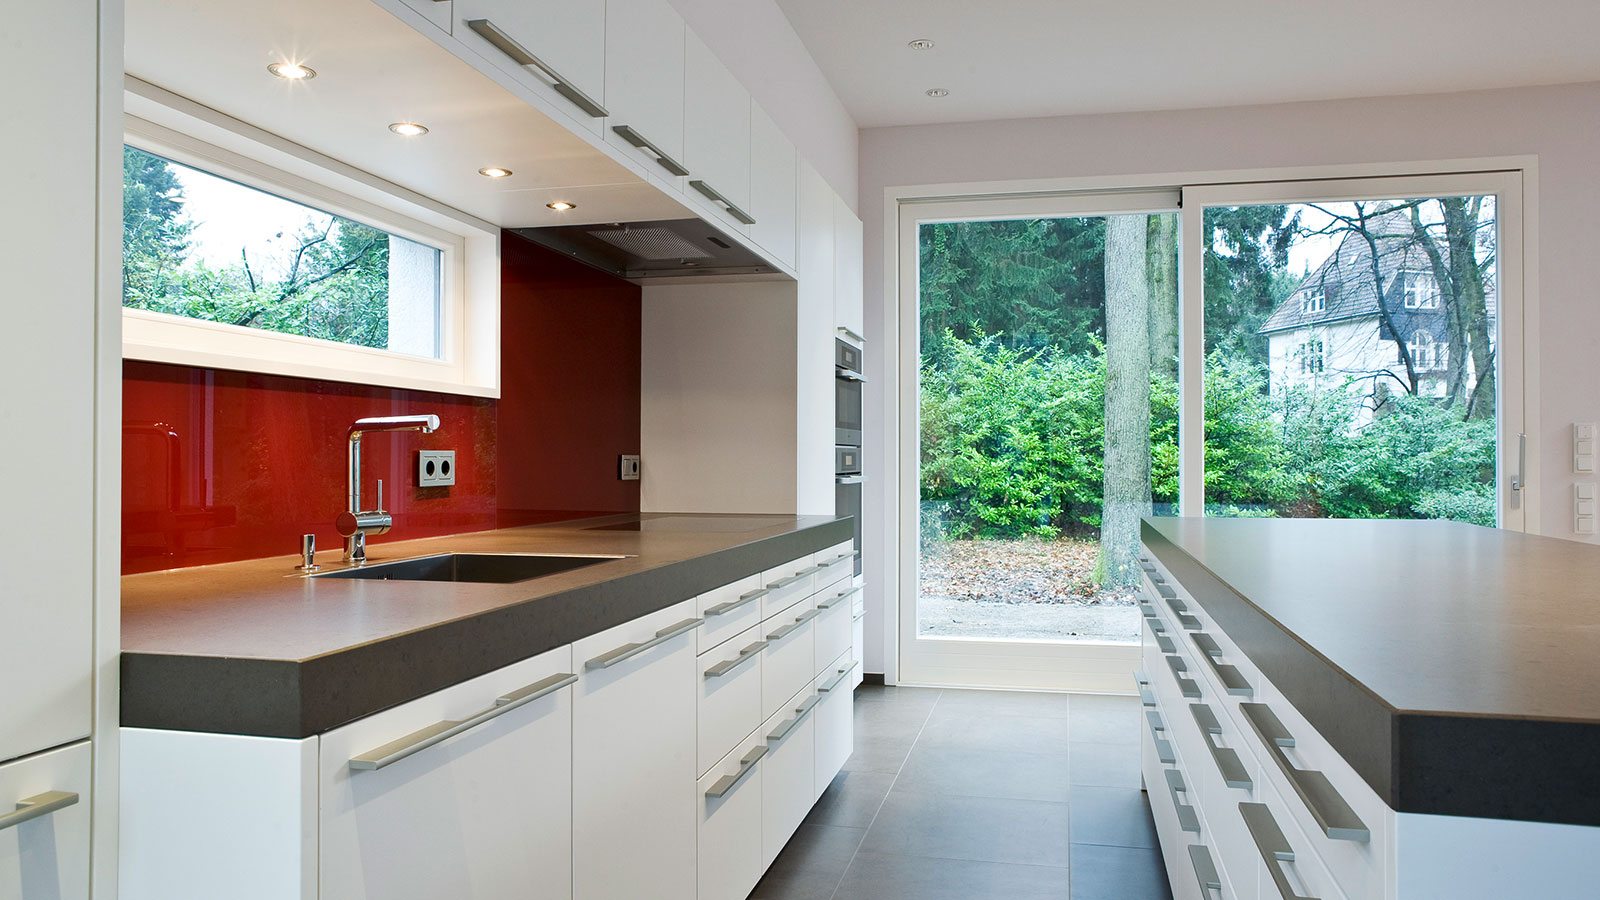 Die offene Küche wurde von Beilstein Innenarchitektur entworfen und von Siematic umgesetzt